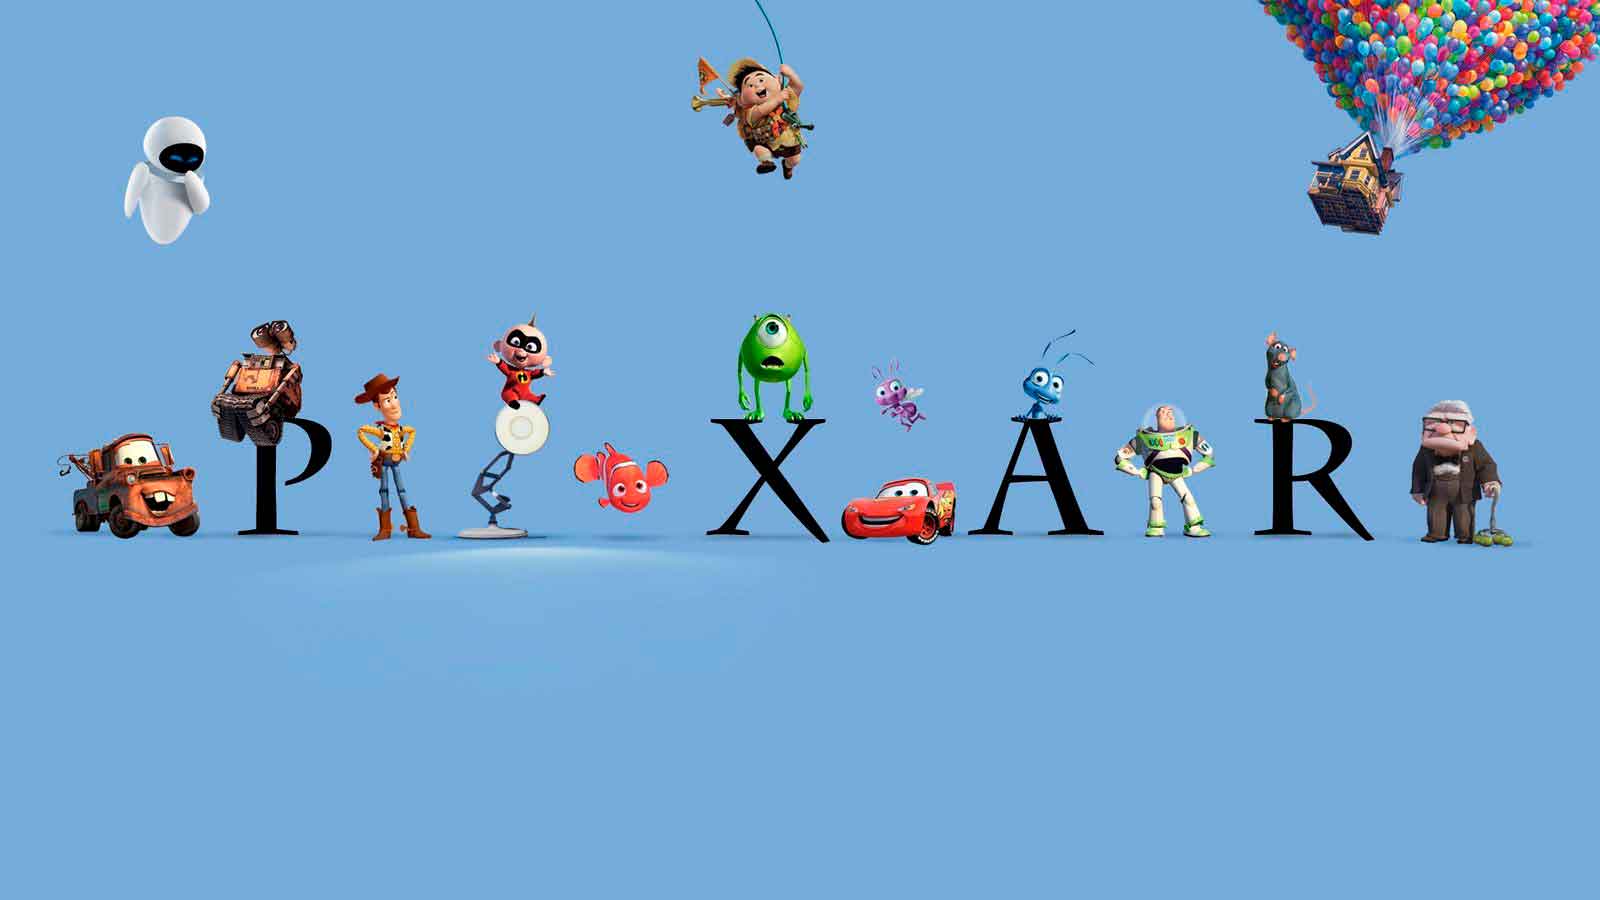 La teoría de Pixar que conecta casi todas sus películas